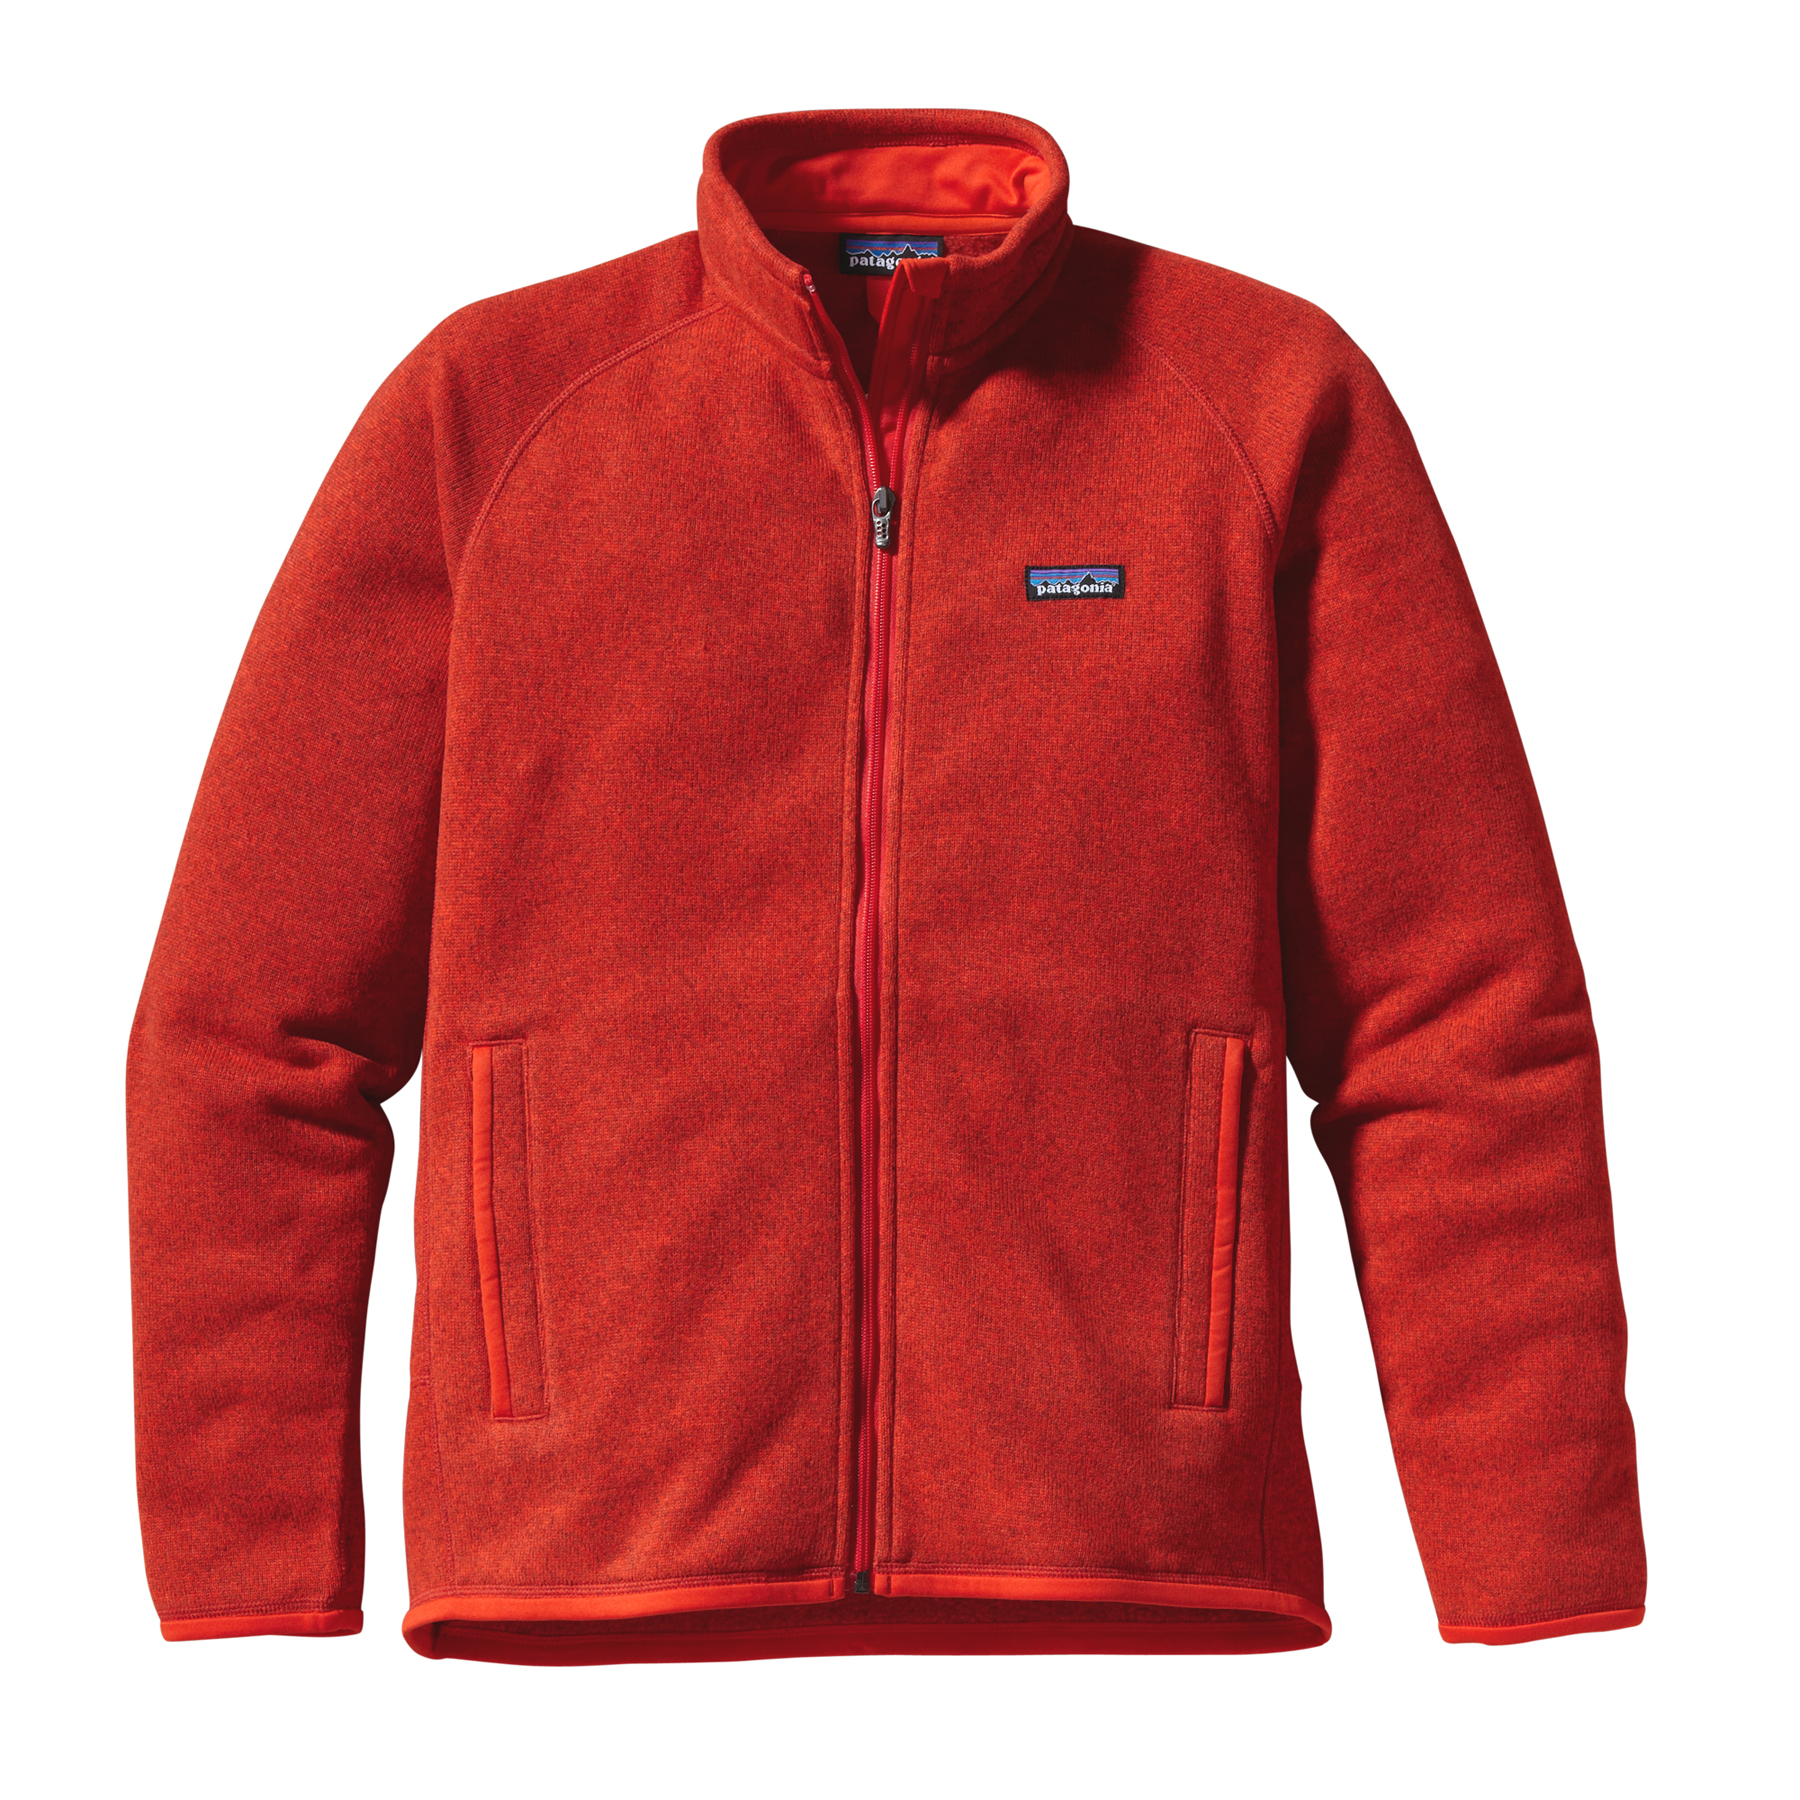 Foto Patagonia Better Sweater™ Jacket Men Paintbrush Red (Modell 2013) foto 402672